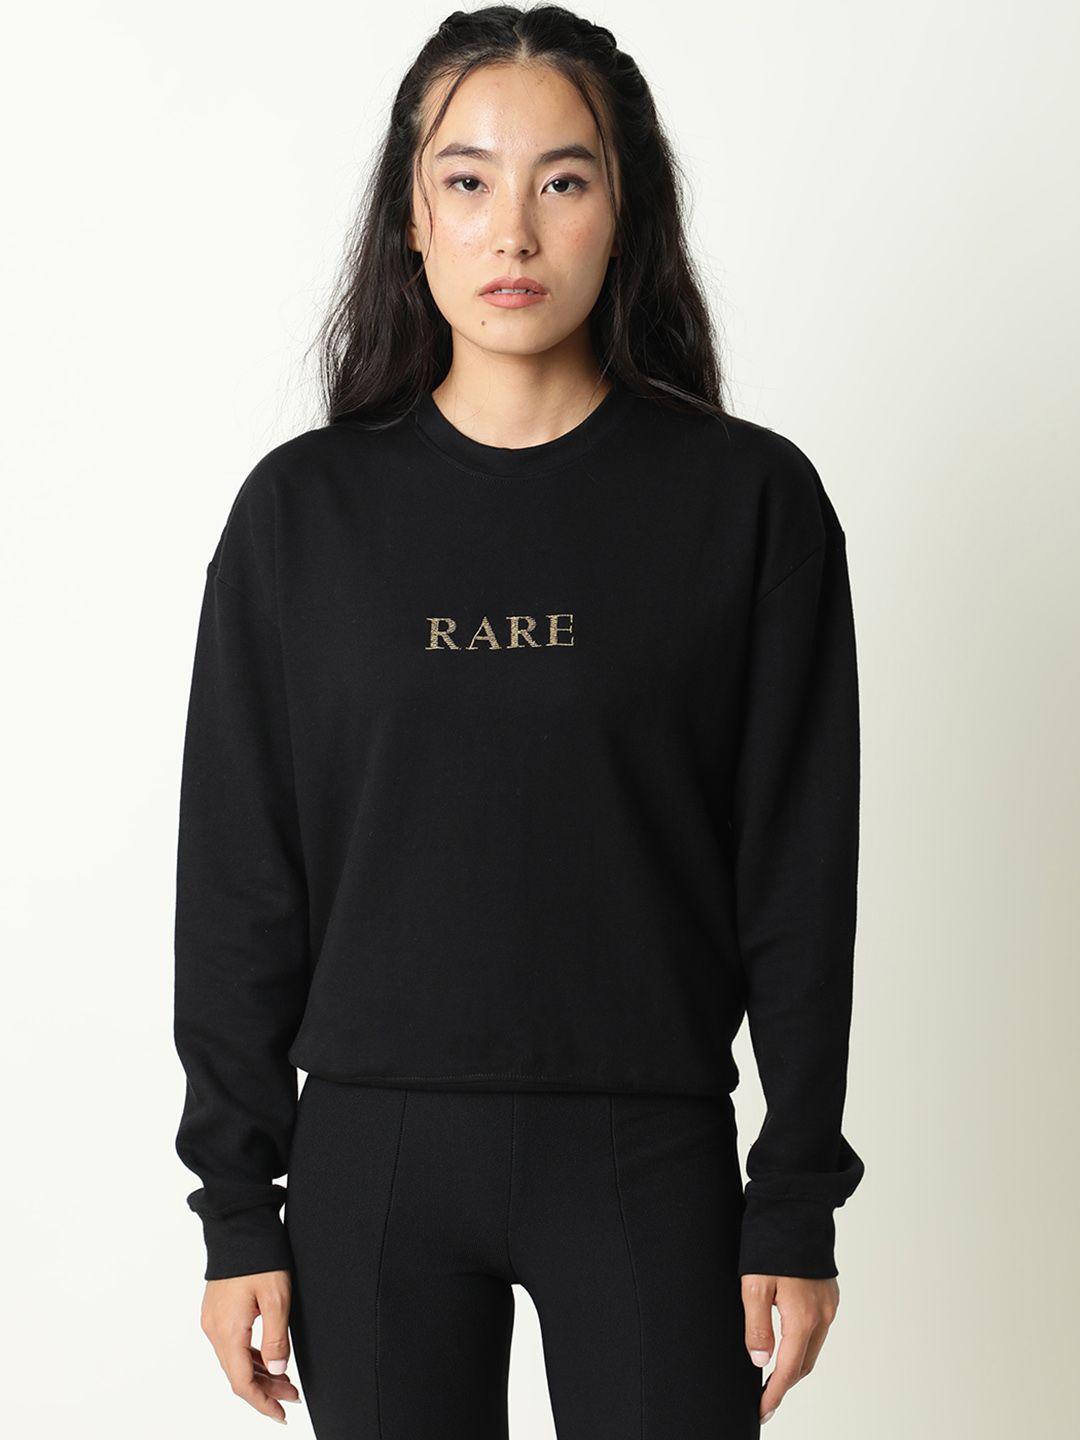 rareism women black printed sweatshirt